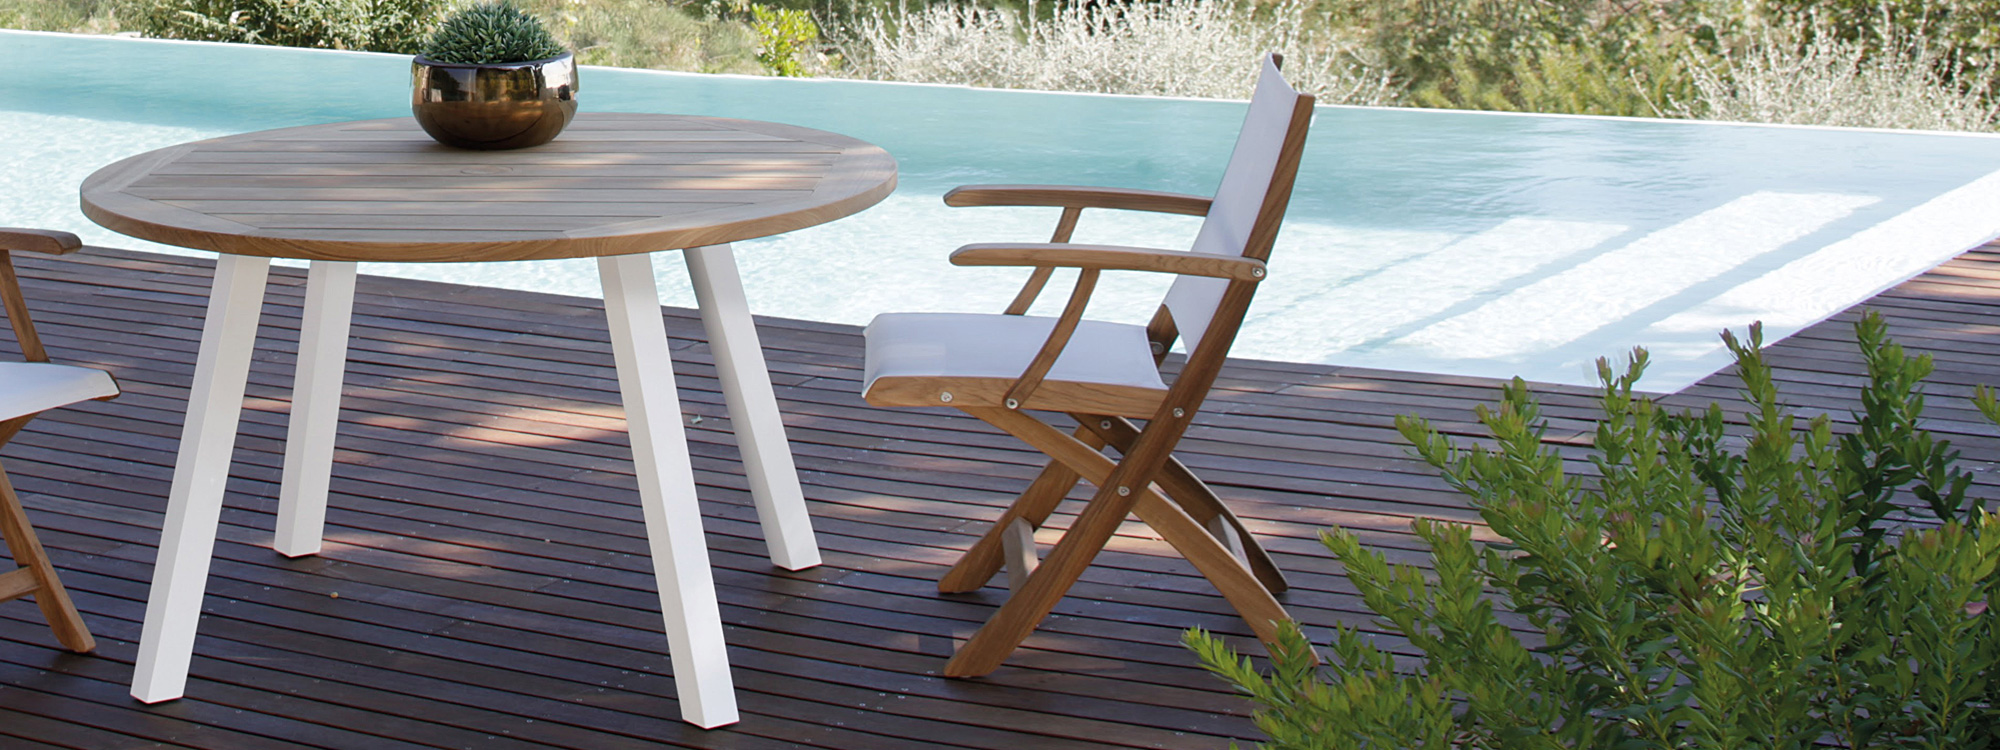 Royal-Botania-Round-teak-garden-table-three-white-legs-1.jpg